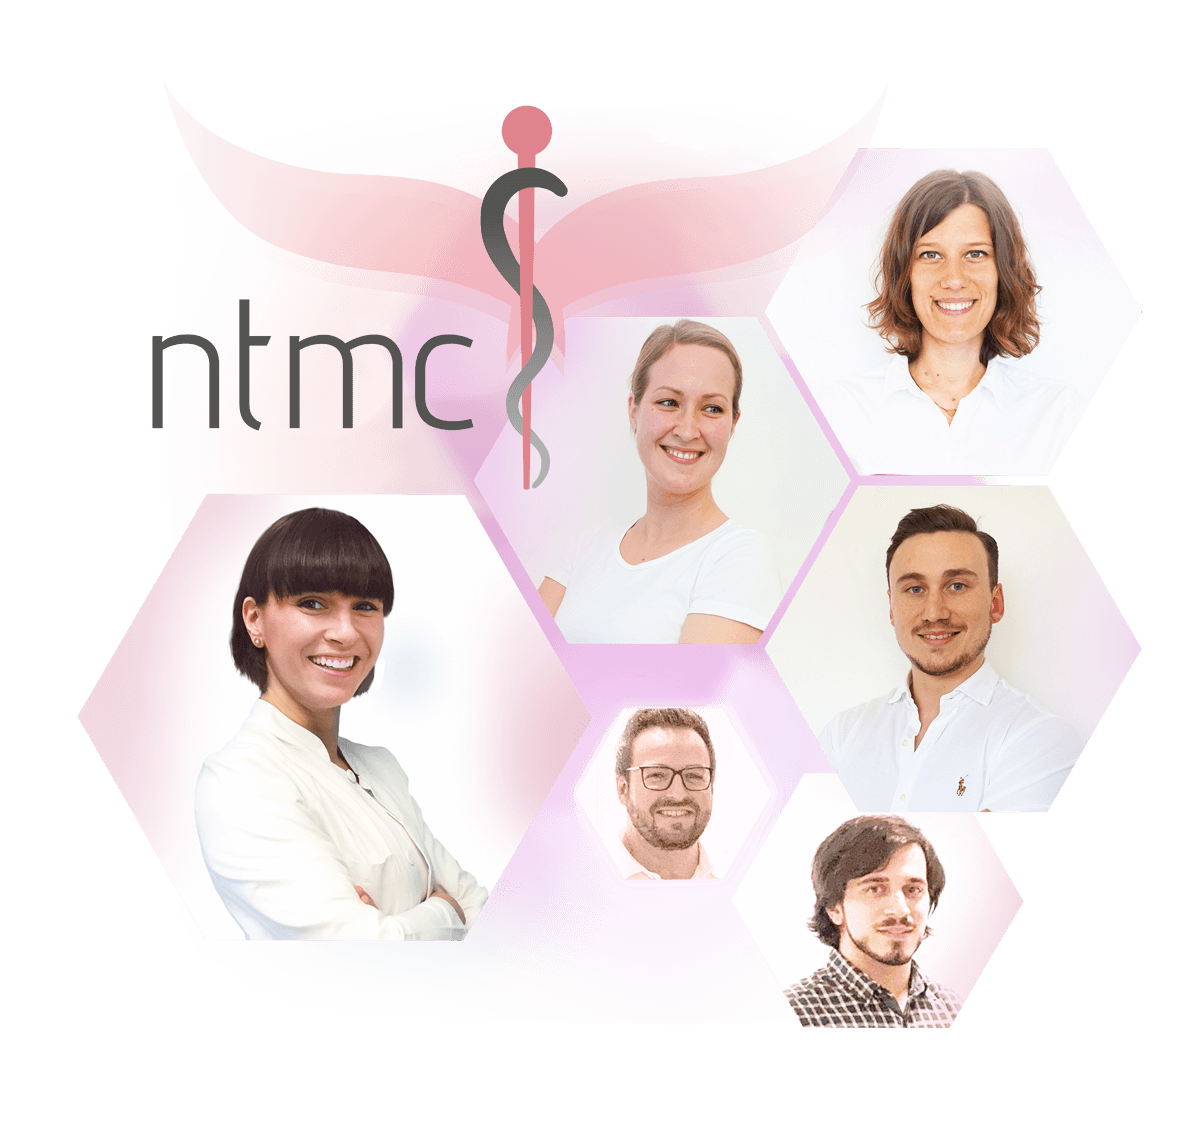 Ärzteteam der ntmc GmbH (Kooperationspartner von Haarfreiheit)